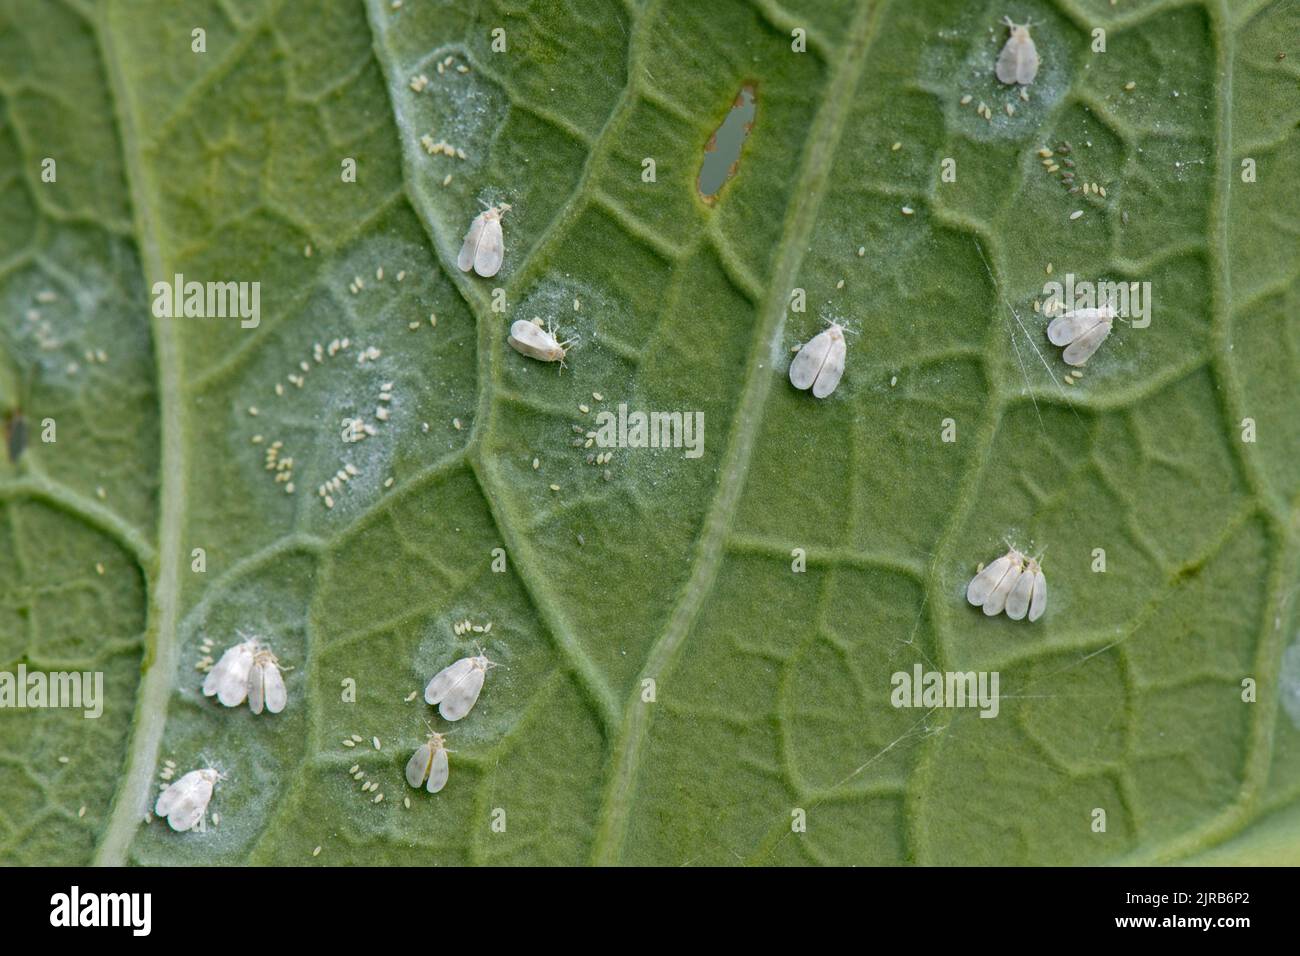 Choux blancs (Aleyrodes prolétella) adultes et cercles d'oeufs sur le dessous de la feuille pourpre de brocoli, Berkshire, août Banque D'Images